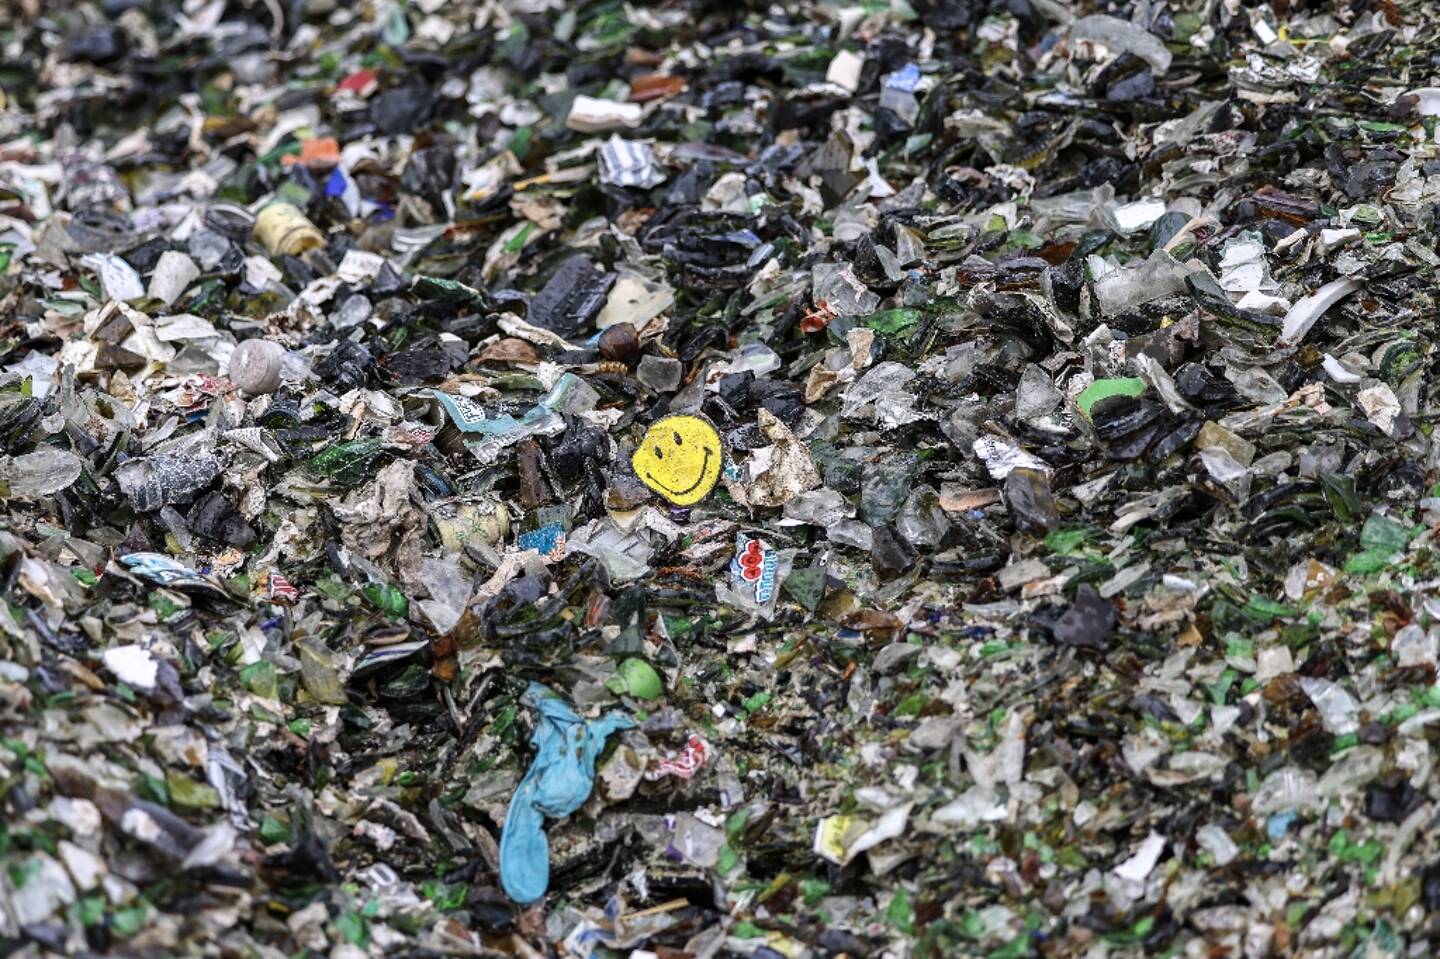 Recycler biologiquement les barquettes alimentaires en plastique qui finissent habituellement à l'incinérateur est désormais possible